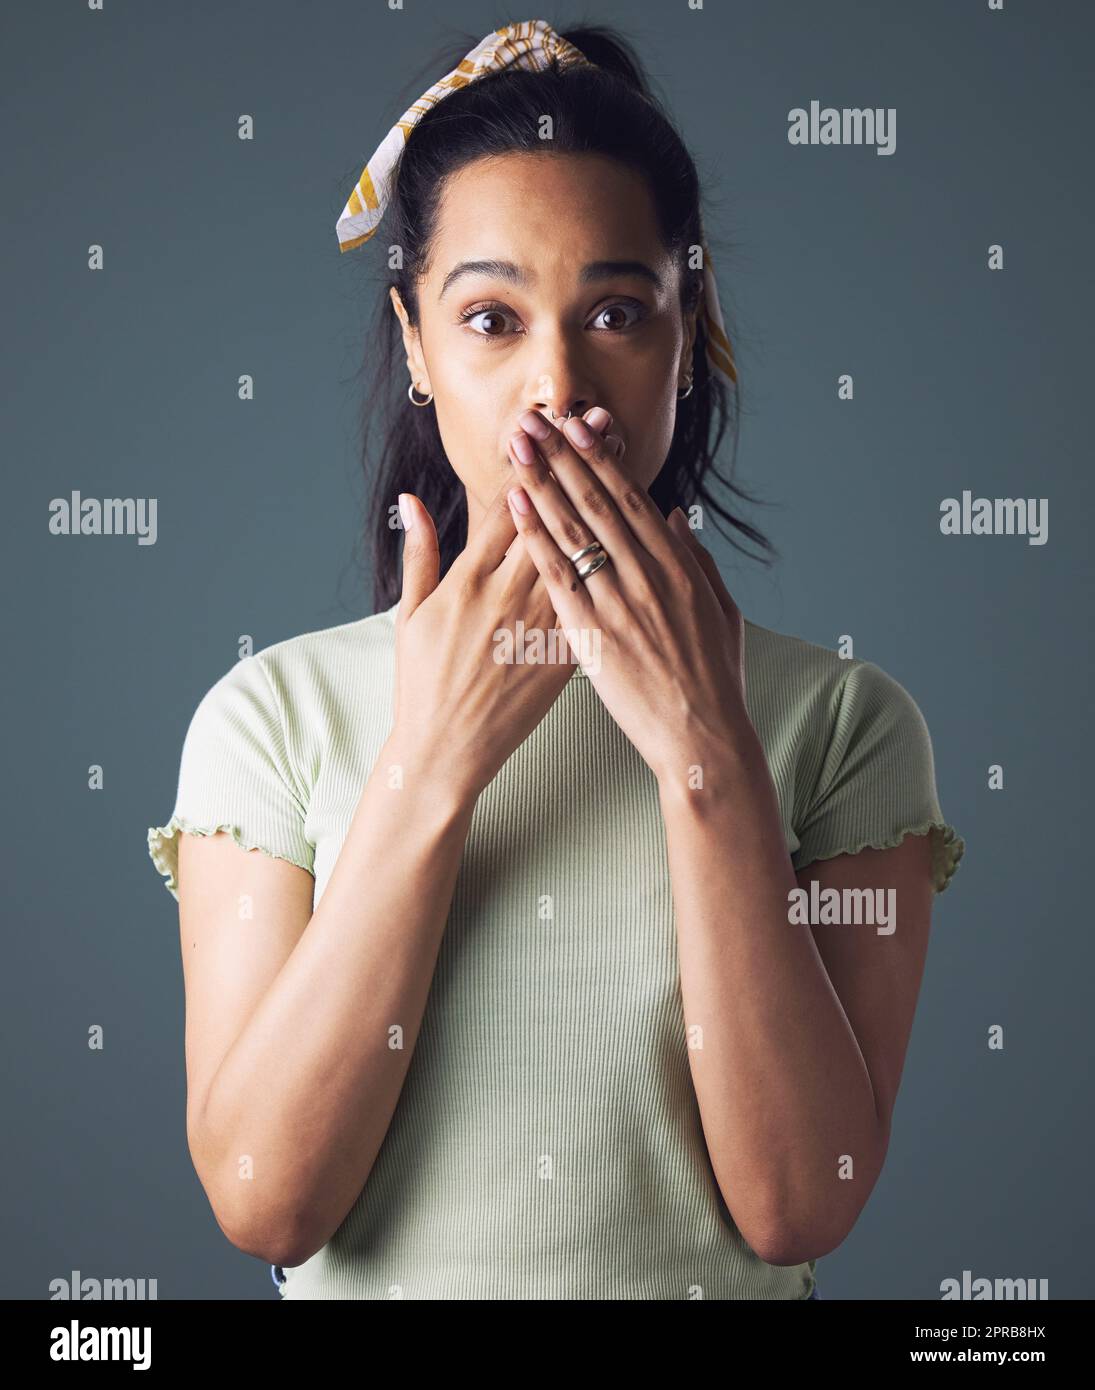 Je ne suis pas bon avec garder des secrets. Photo studio d'une jeune femme debout avec ses mains au-dessus de sa bouche. Banque D'Images